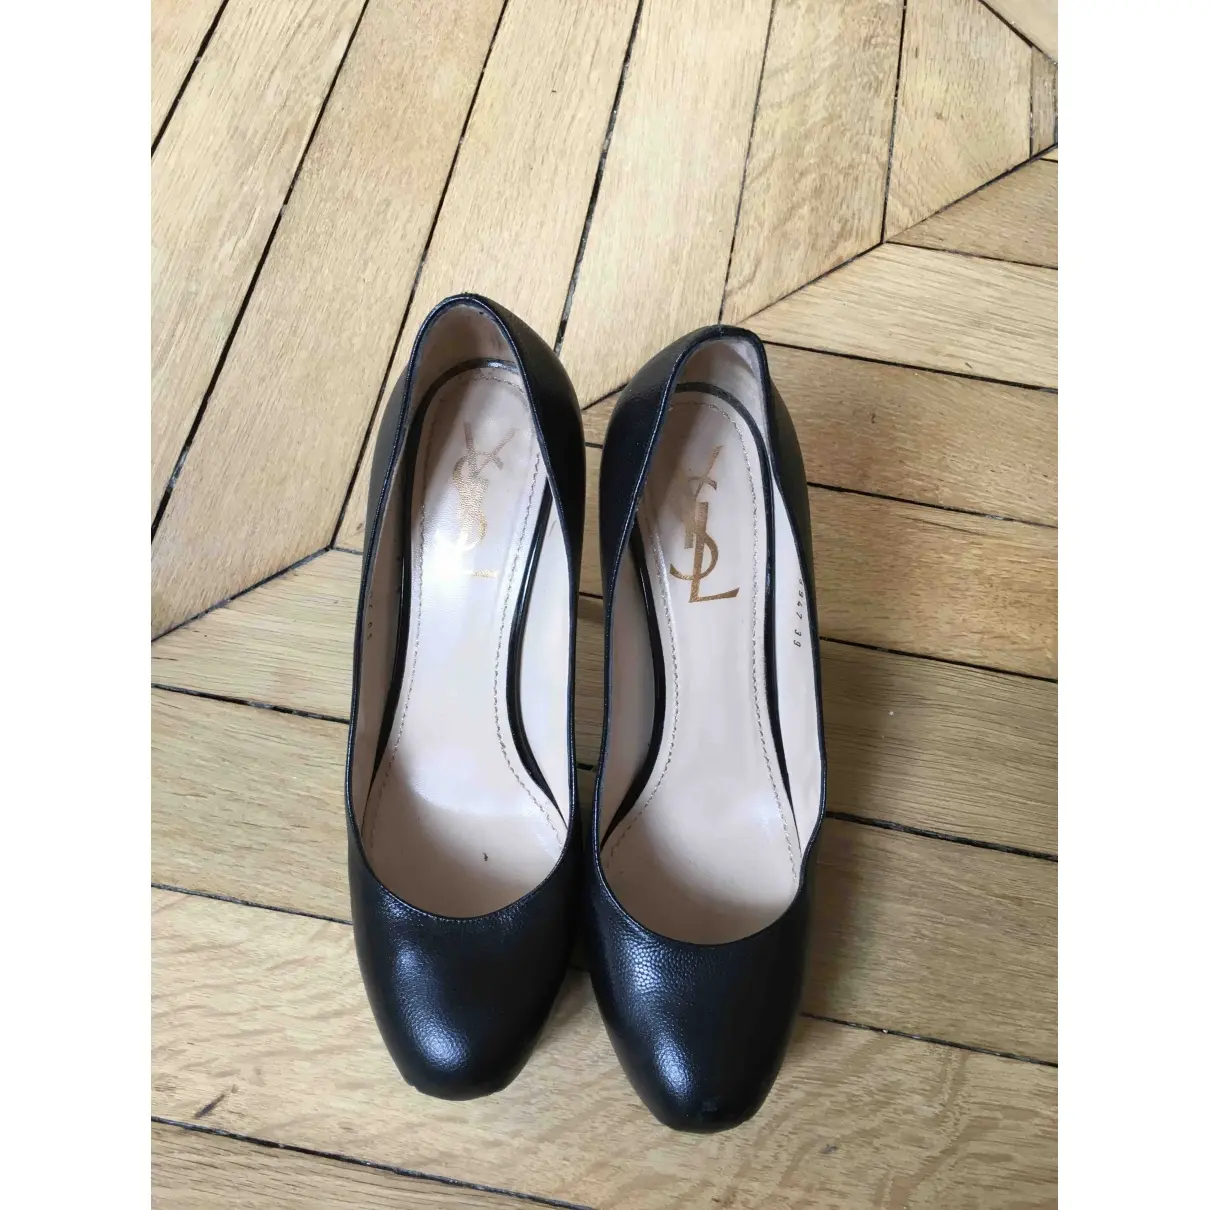 Yves Saint Laurent Trib Too leather heels for sale - Vintage